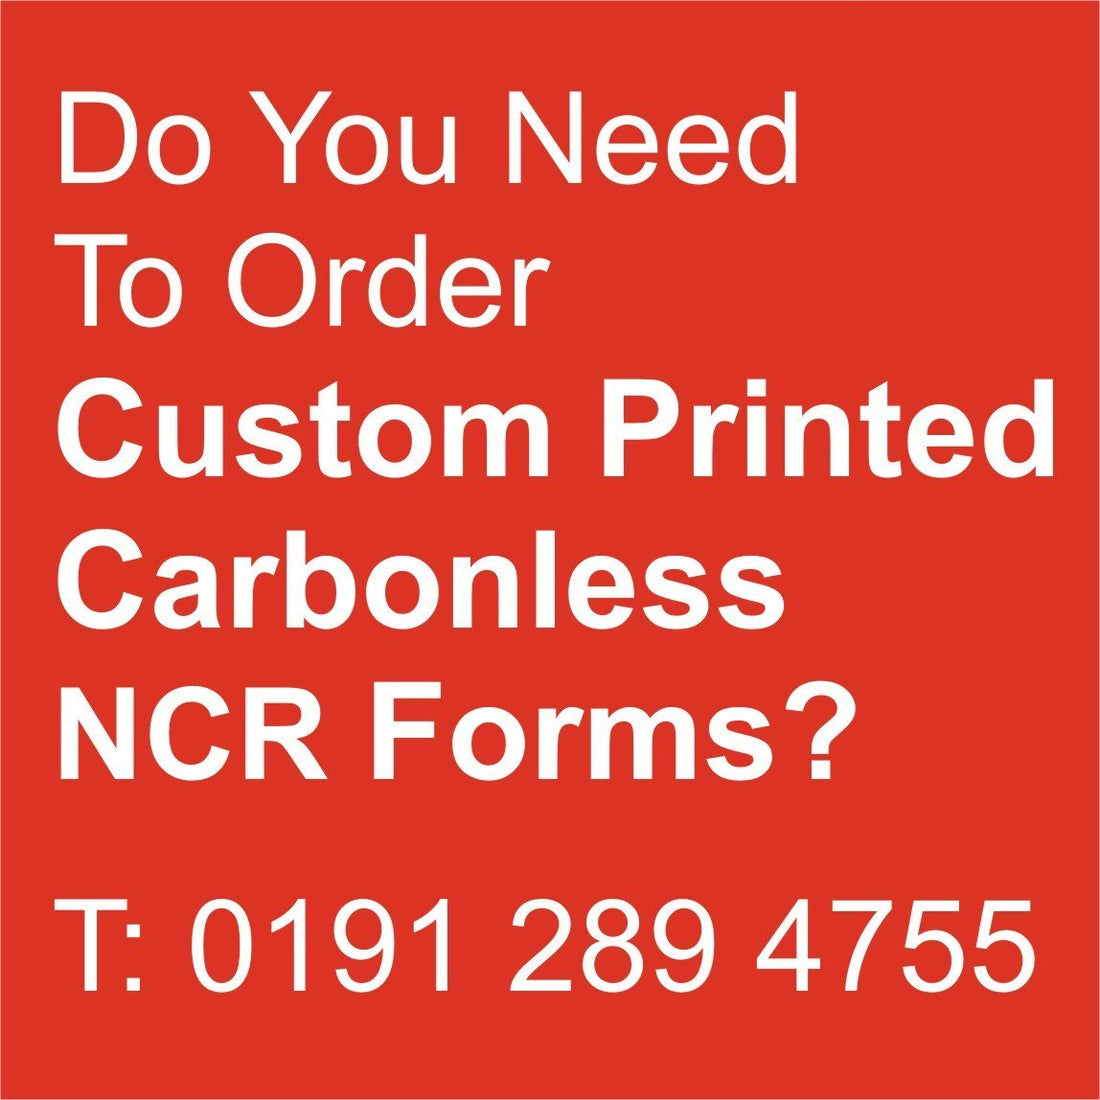 NCR Books custom made especially for you!